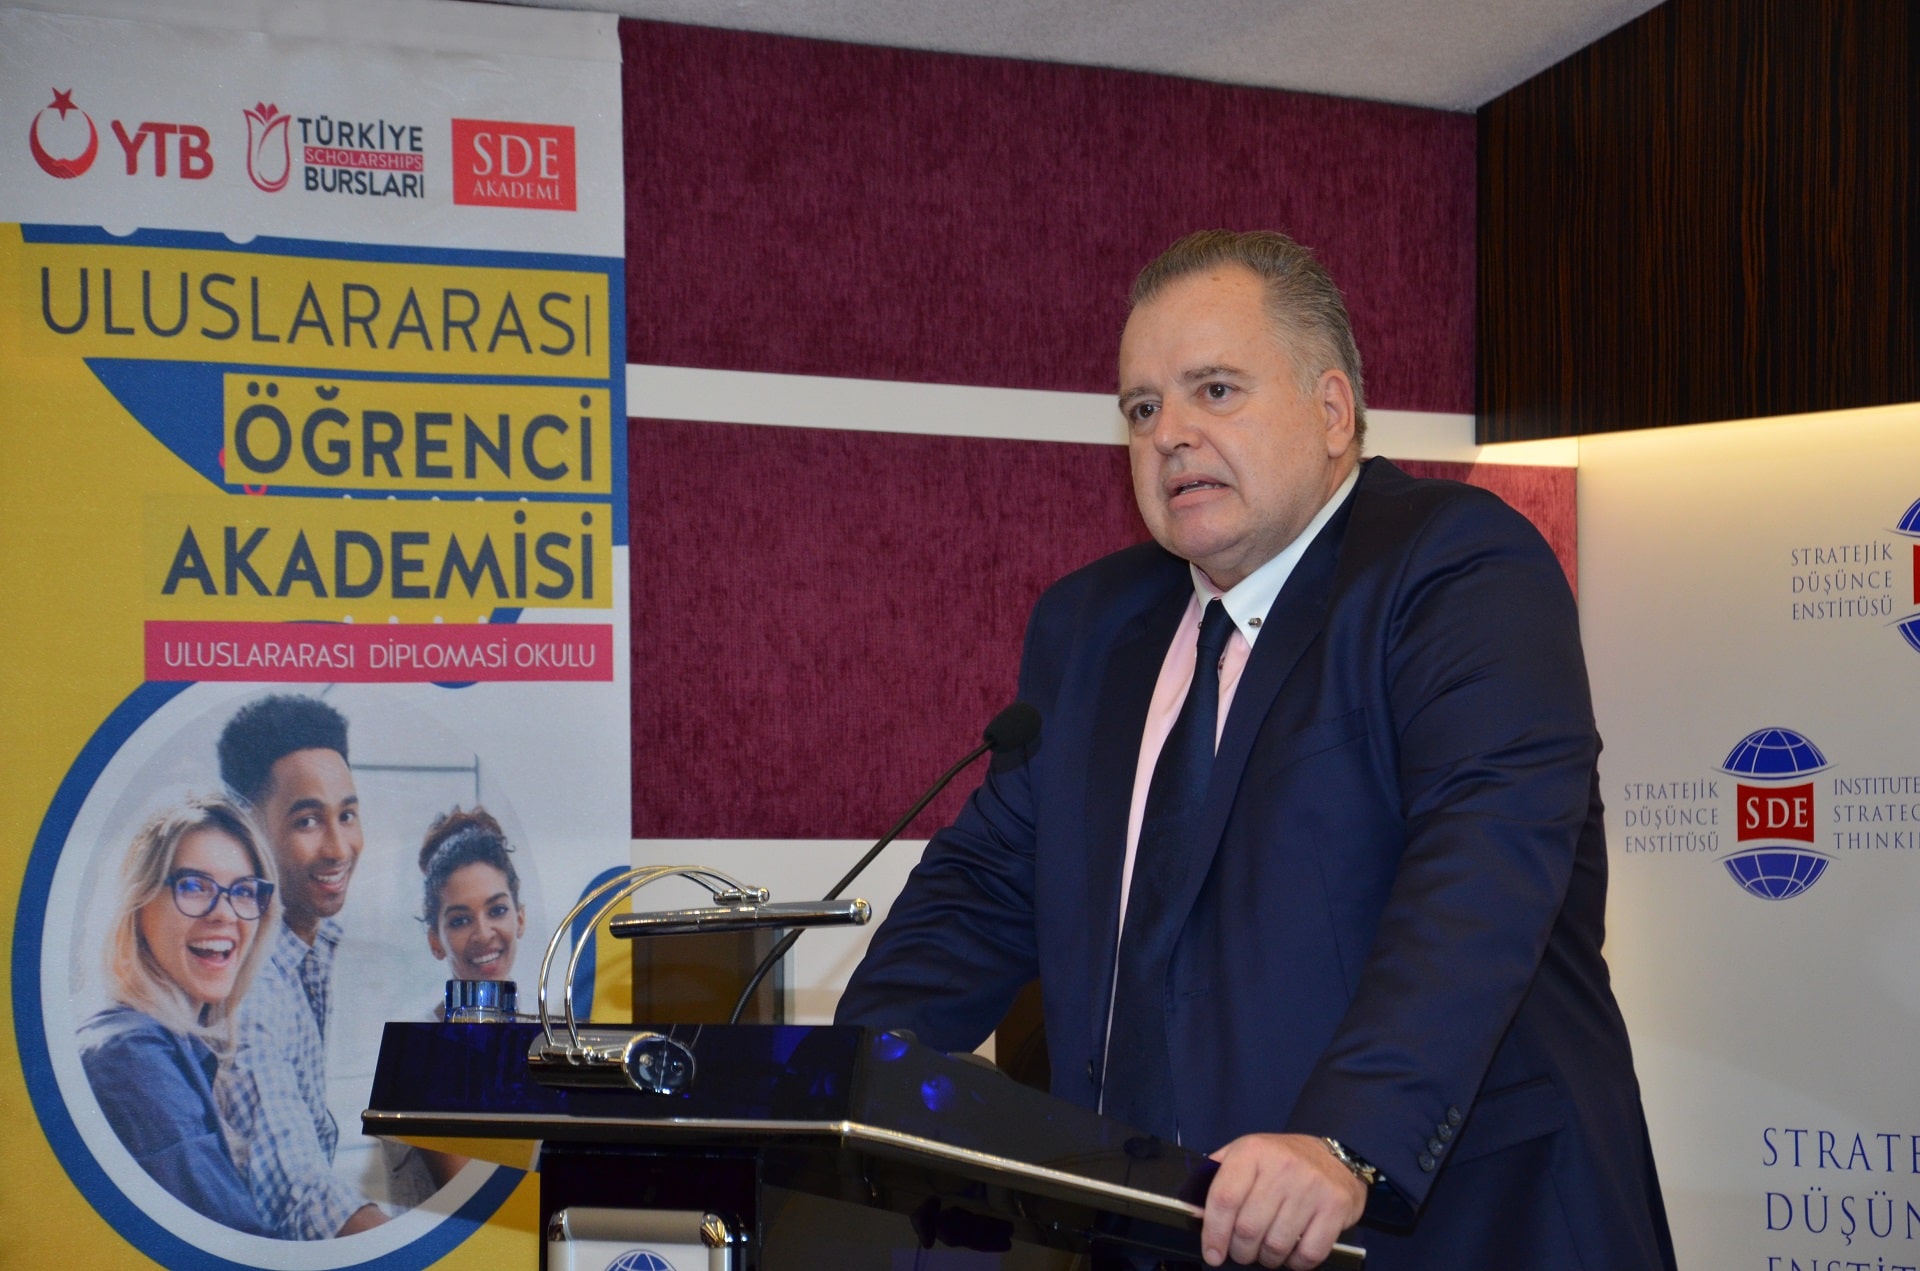 Hırvatistan’ın Dış Politika Öncelikleri ve <br> Türkiye ile İlişkileri